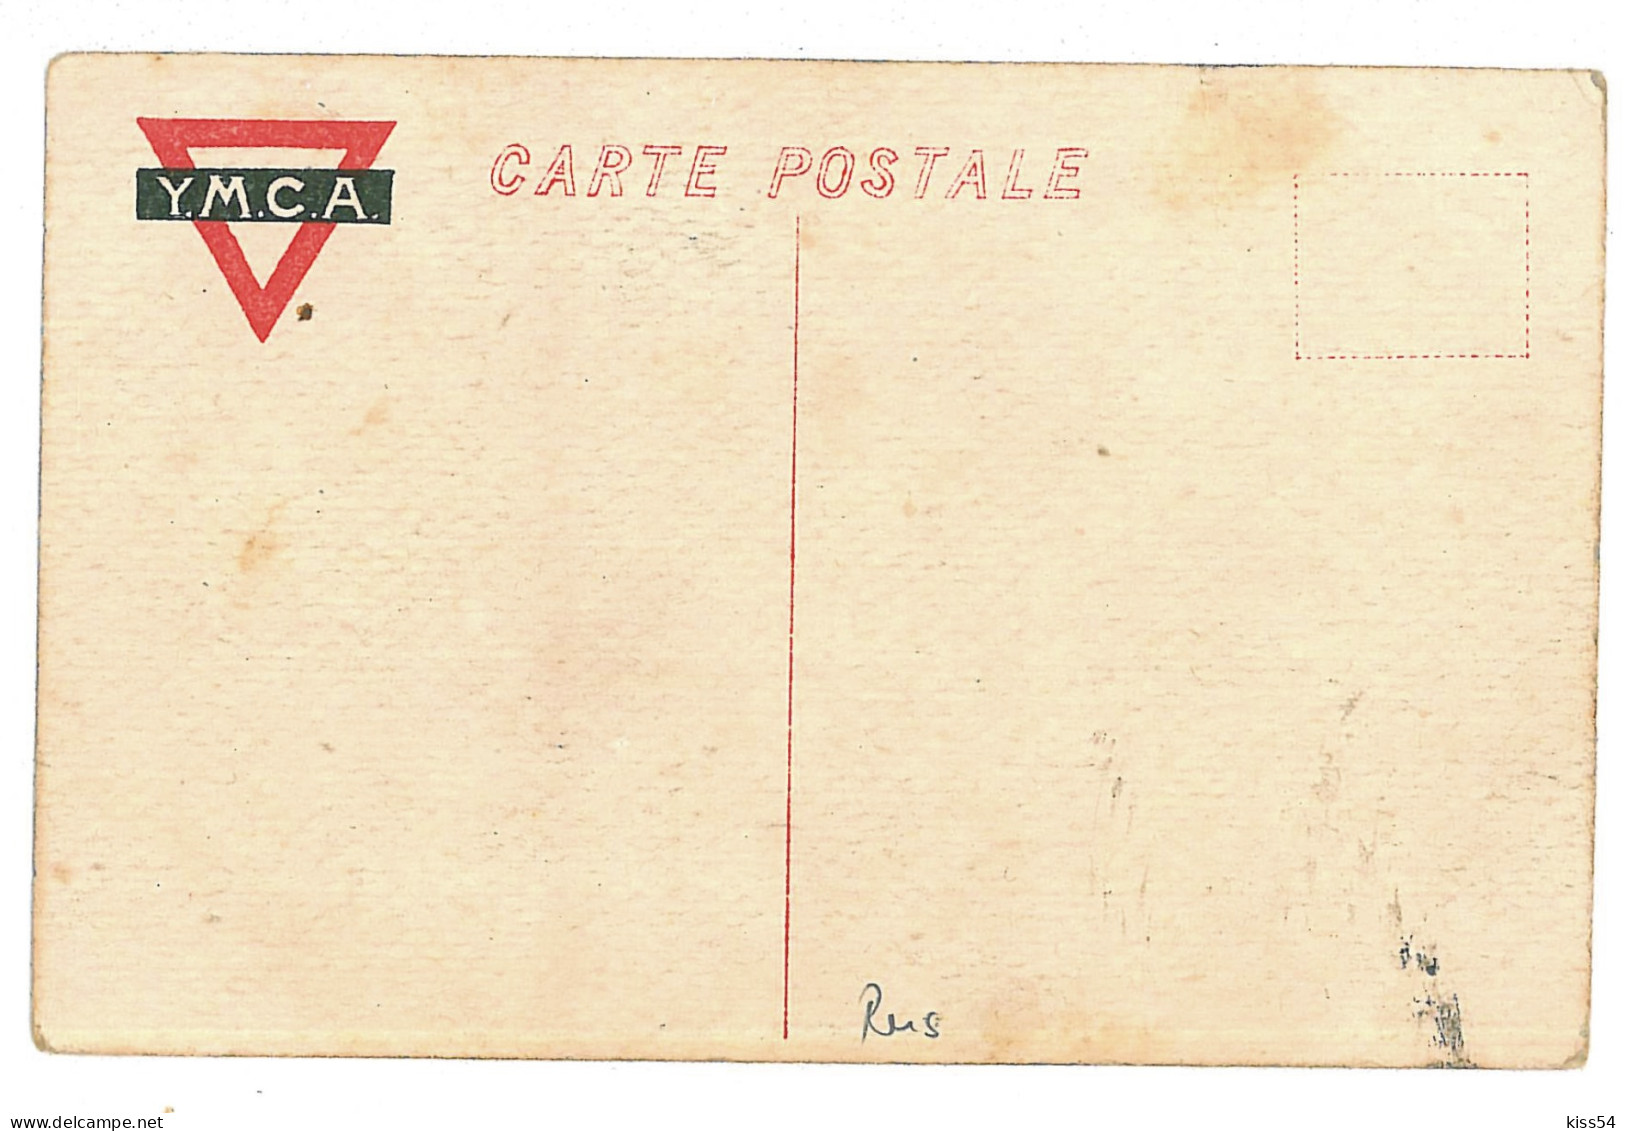 RUS 42 - 10114  VLADIVOSTOK, Russia - Old Postcard - Unused - Russland